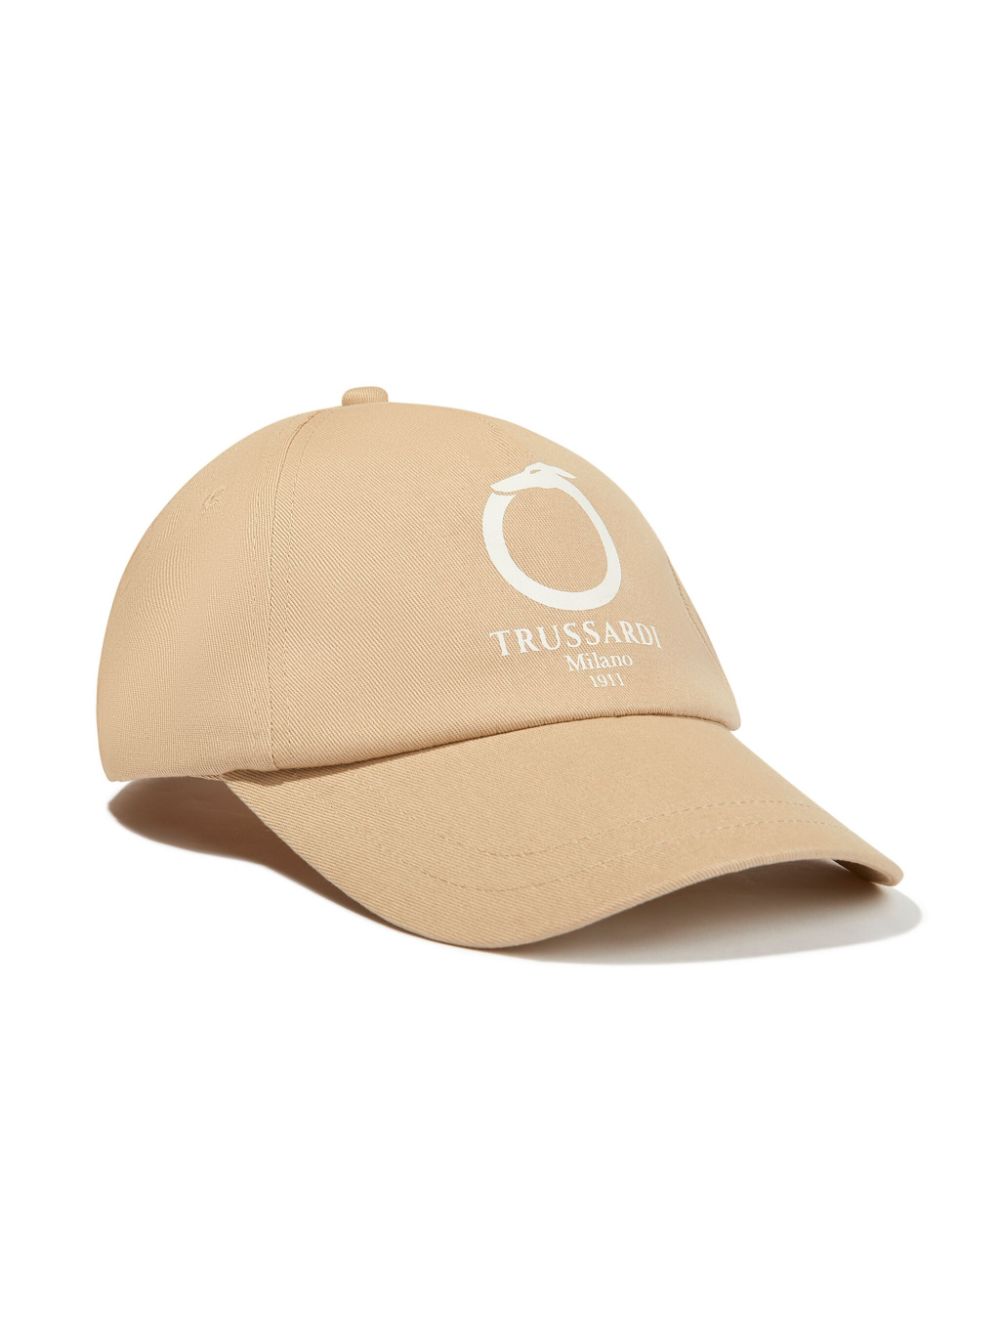 TRUSSARDI JUNIOR logo-print baseball cap - Neutrals von TRUSSARDI JUNIOR